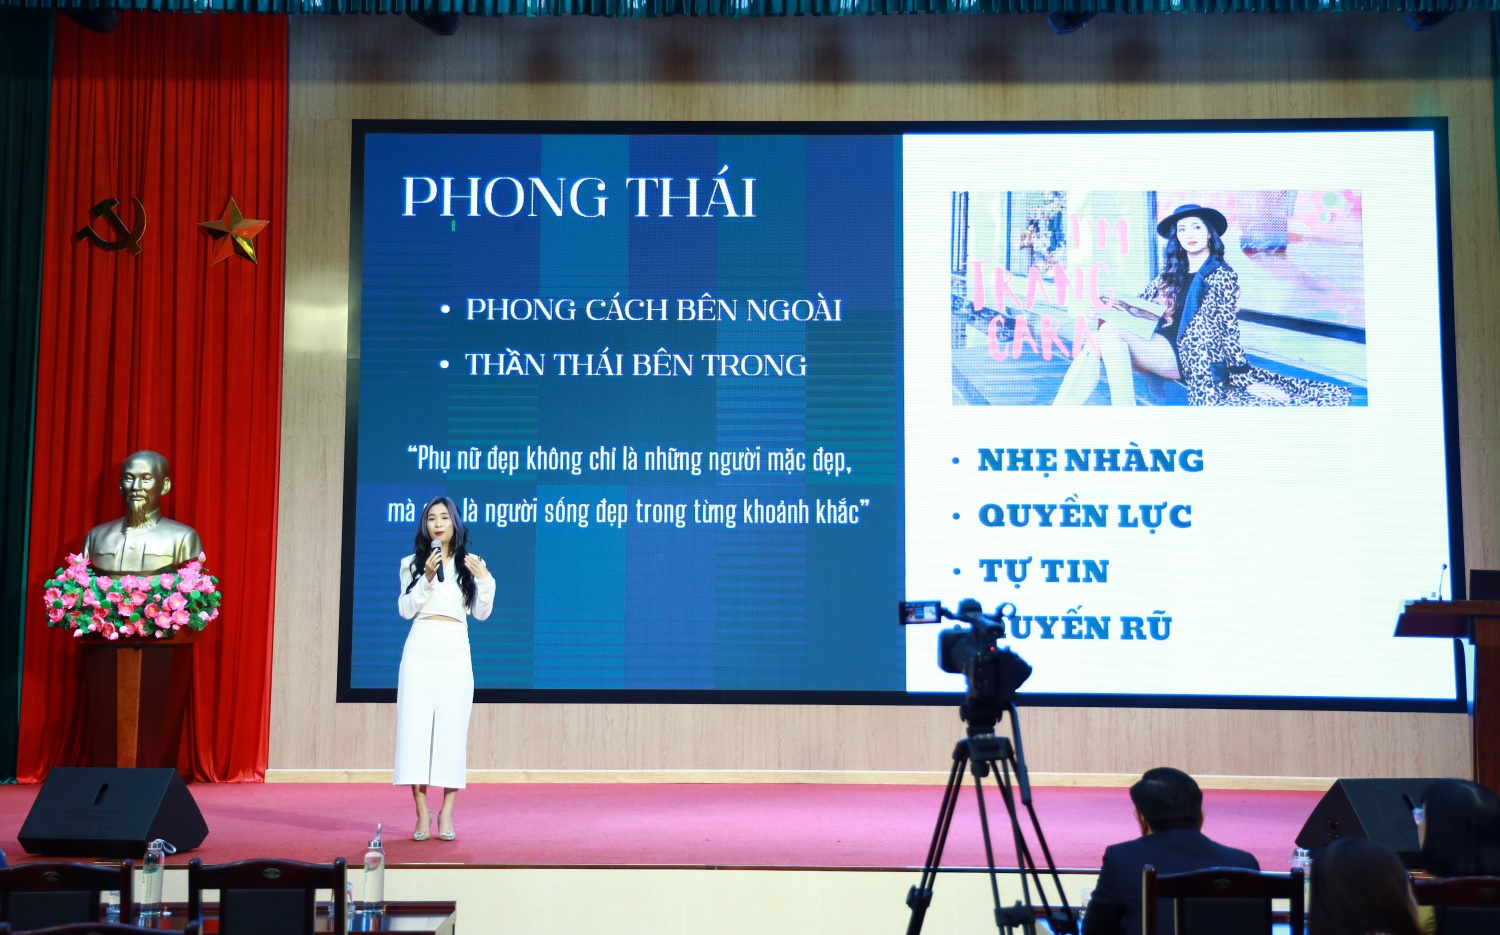 Diễn giả ThS, Đạo diễn Hoàng Minh Trang, nghệ danh (Trang Cara) chia sẻ tại Workshop.